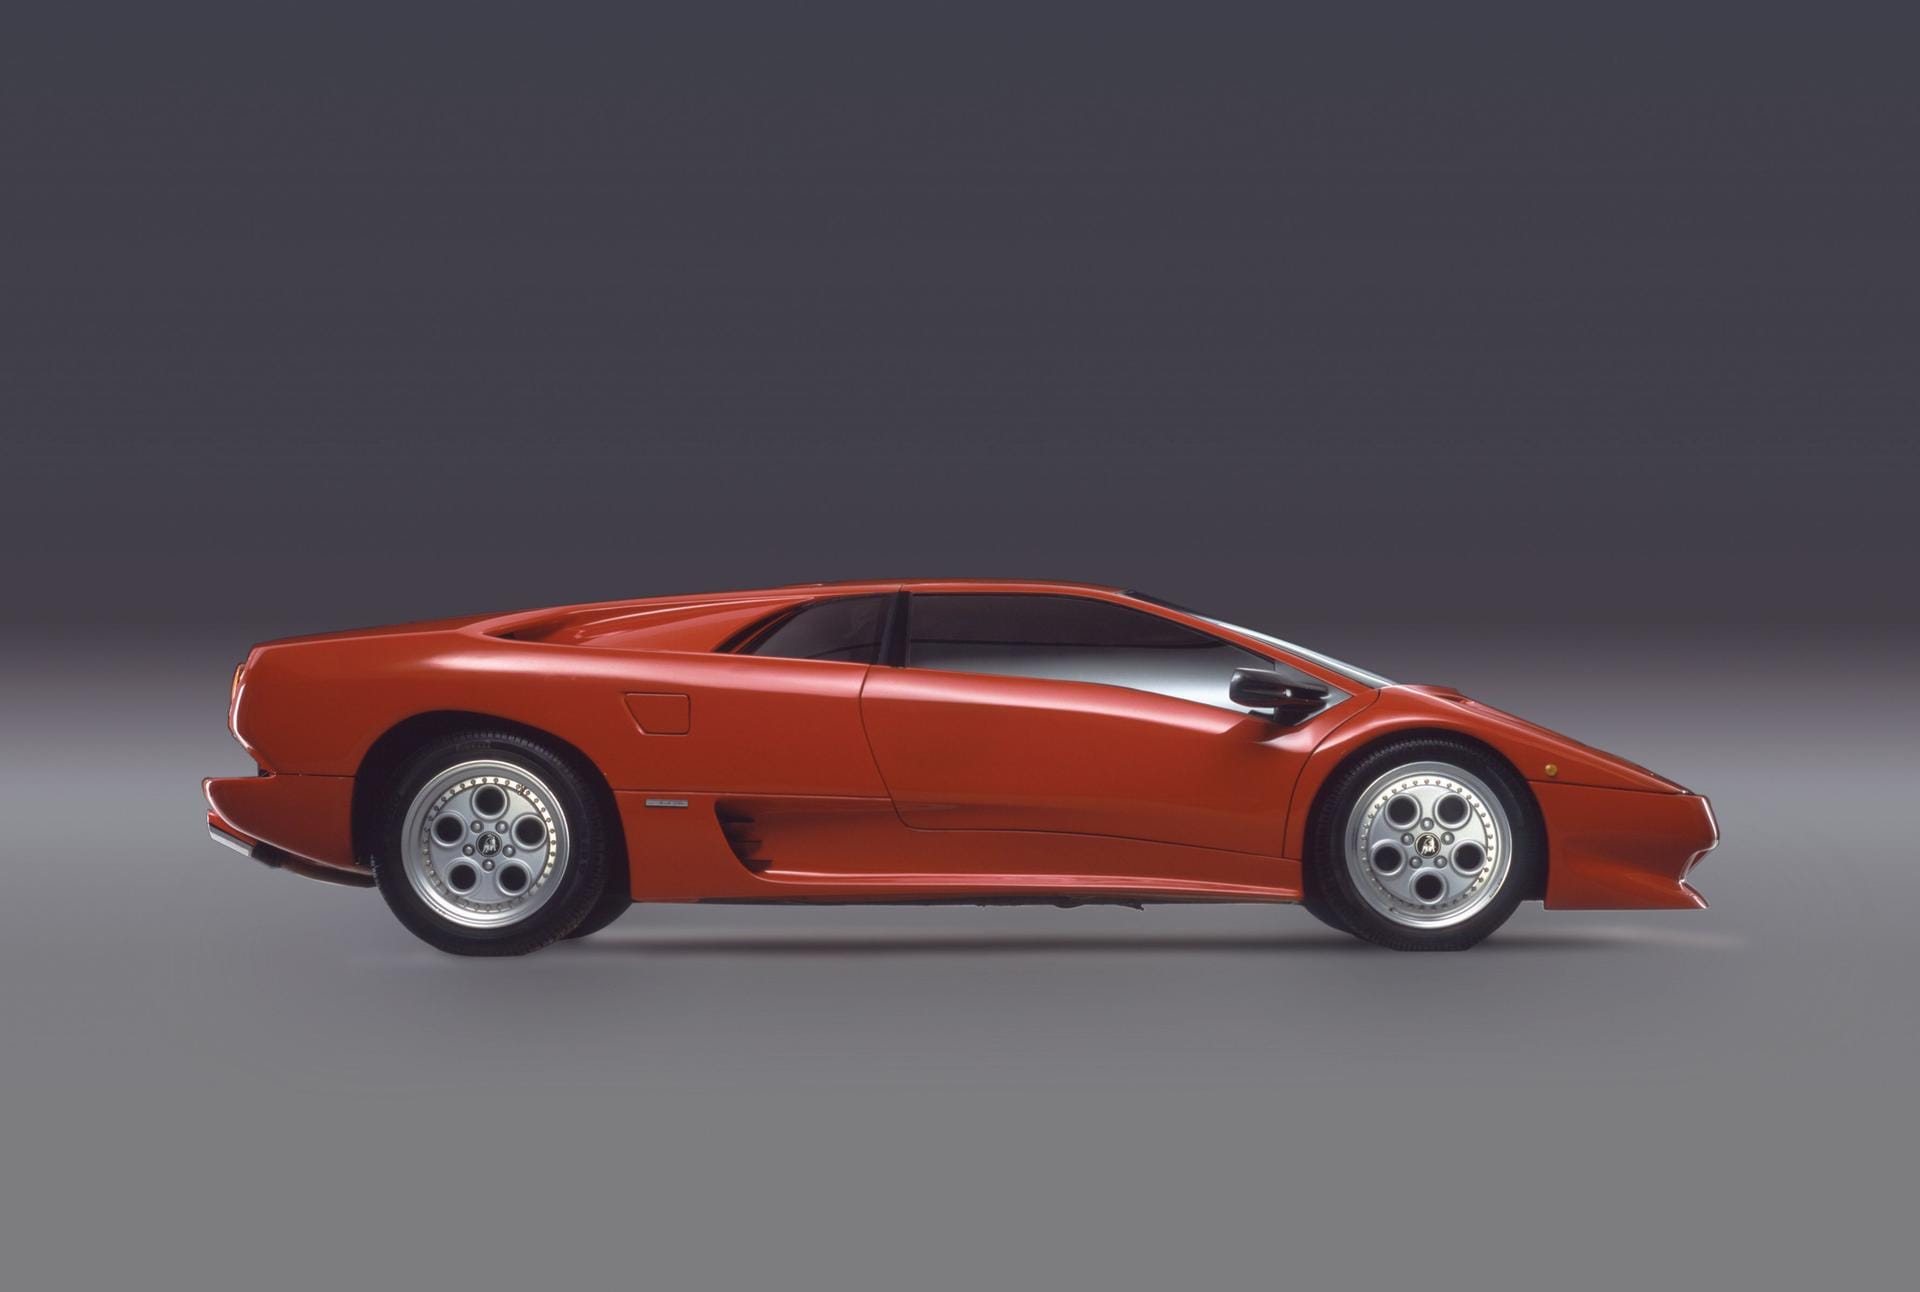 Ein Lamborghini Diablo: Der Diablo ist der Nachfolger des Countach - der Lamborghini galt 1990 mit 325 km/h Spitzentempo als schnellster Serienwagen der Welt.